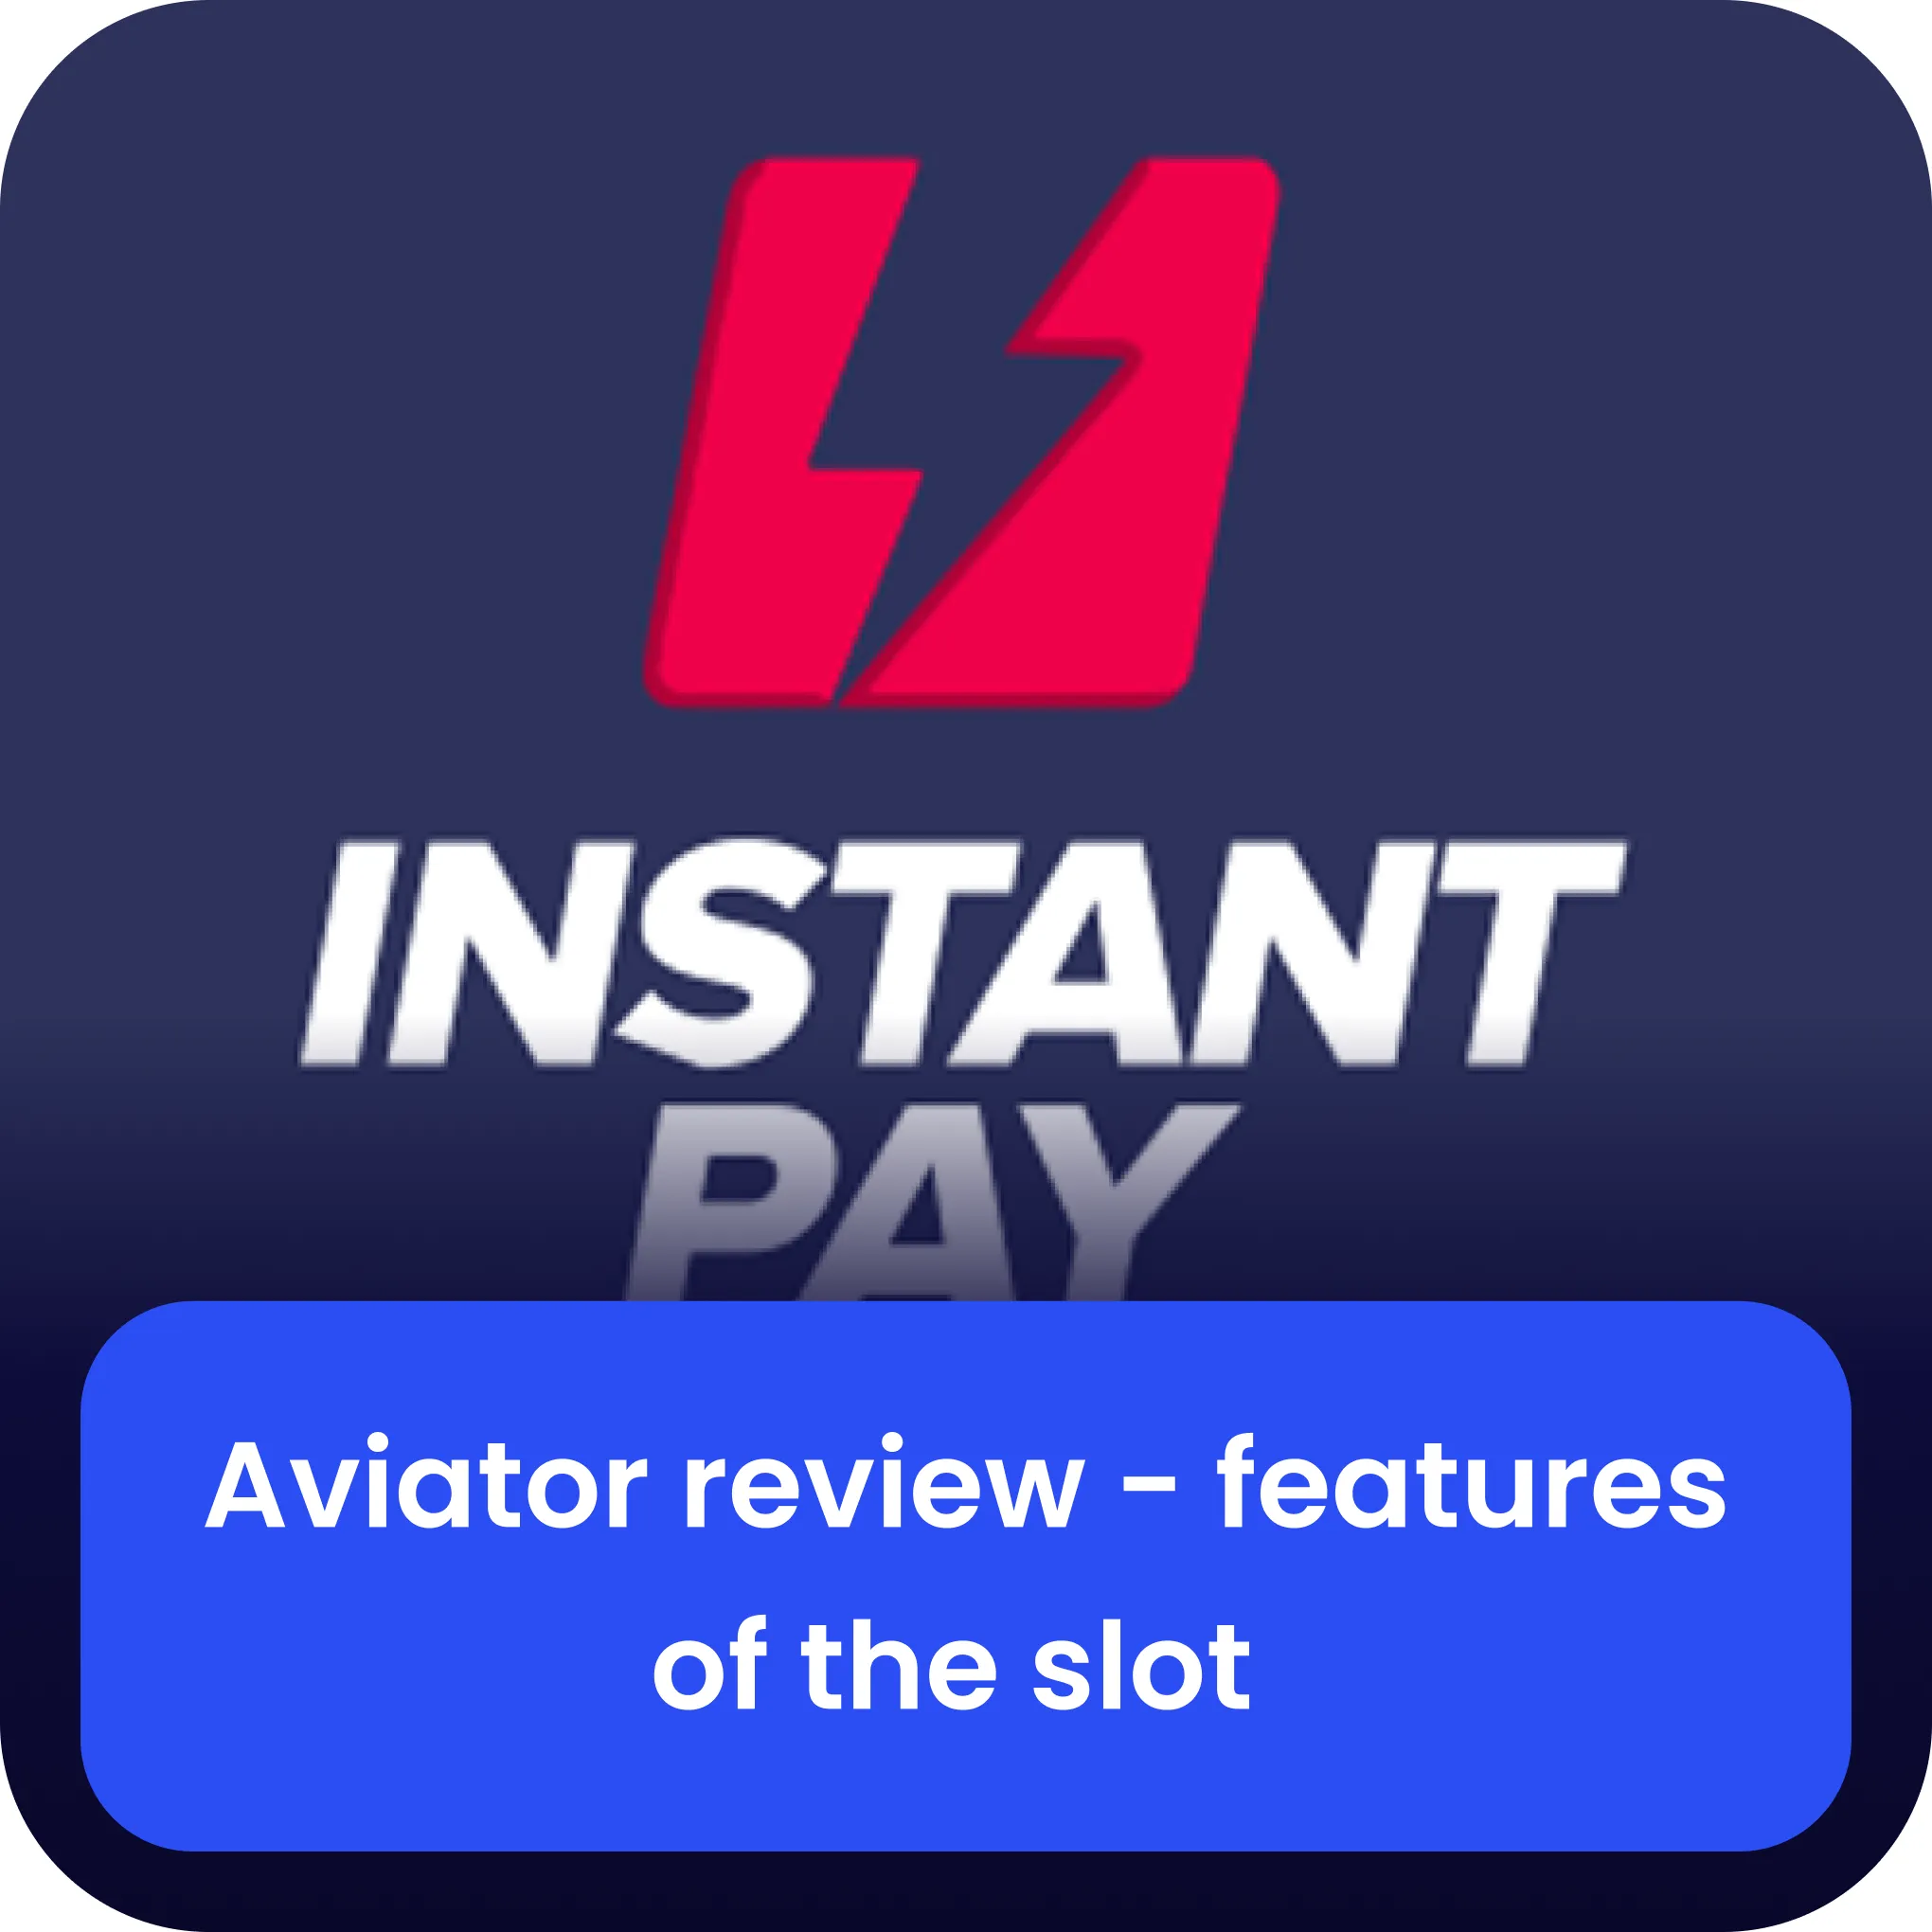 instantpay aviator review